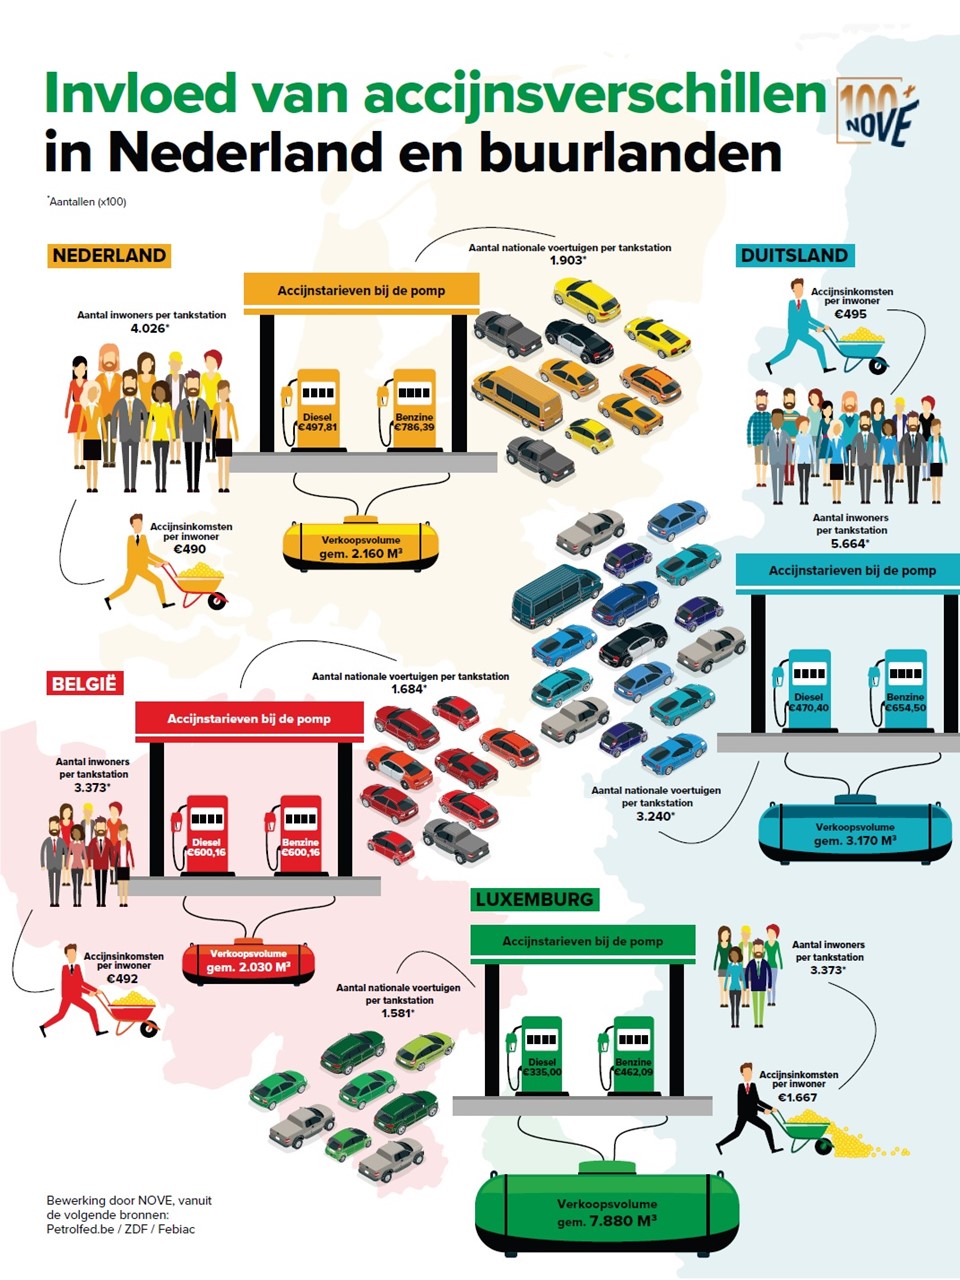 2019-03 inNOVE - Infographic - Invloed van accijnsverschillen in Nederland en buurlanden